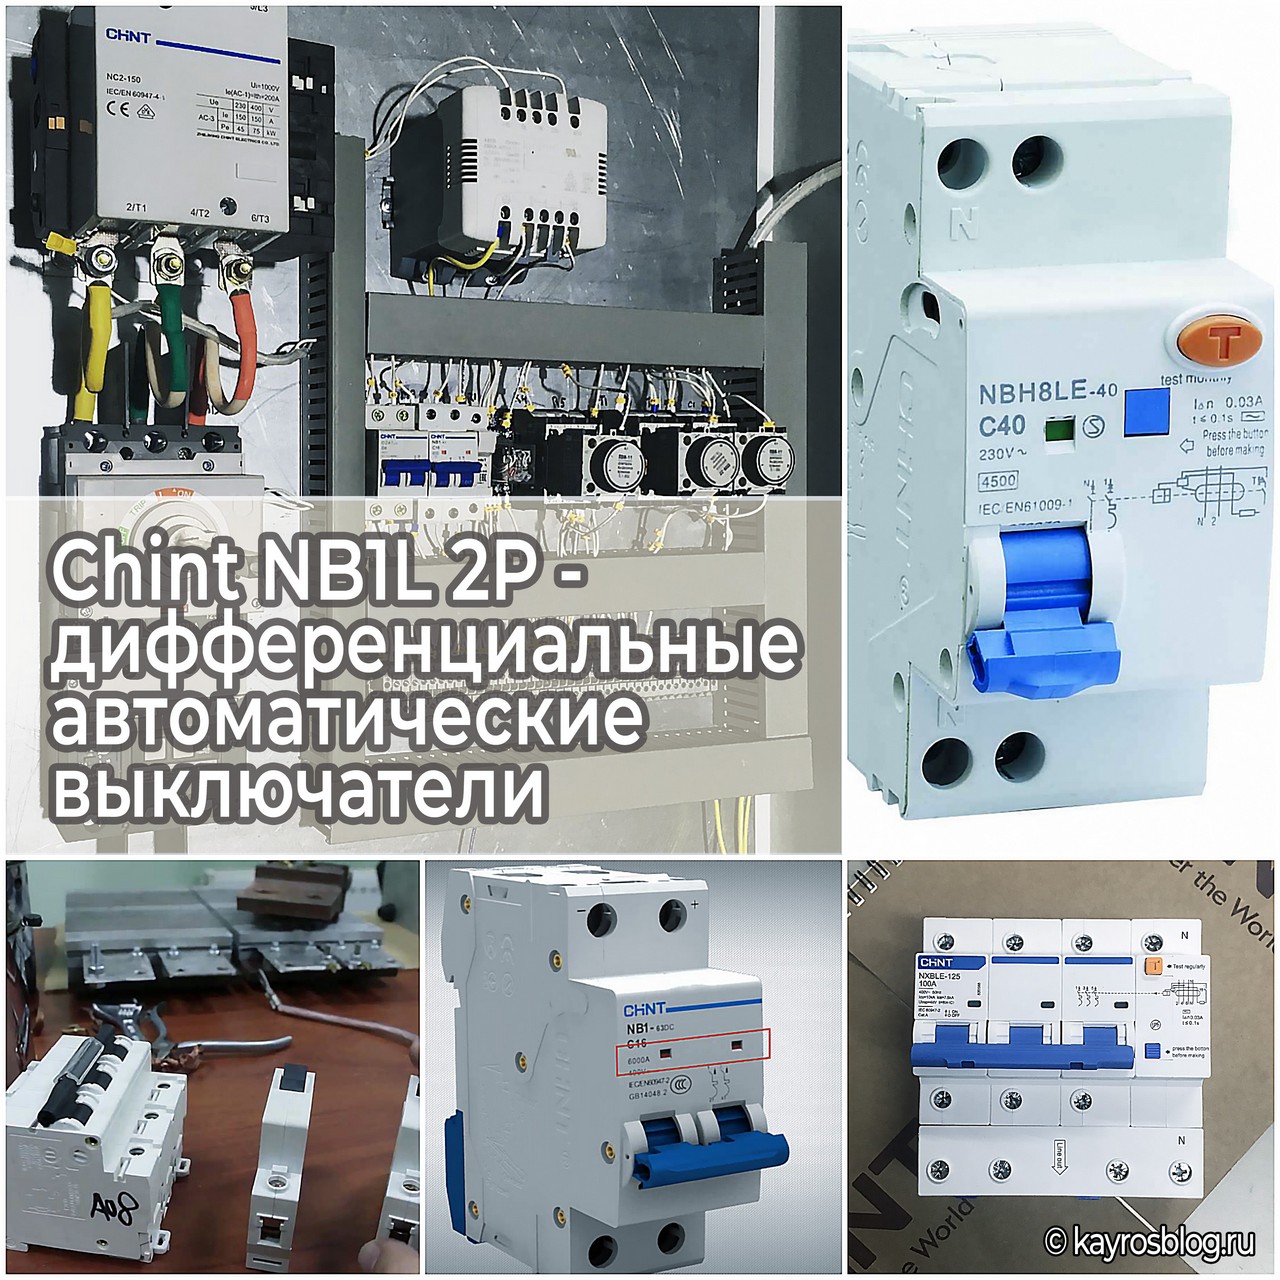 Chint NB1L 2P - дифференциальные автоматические выключатели